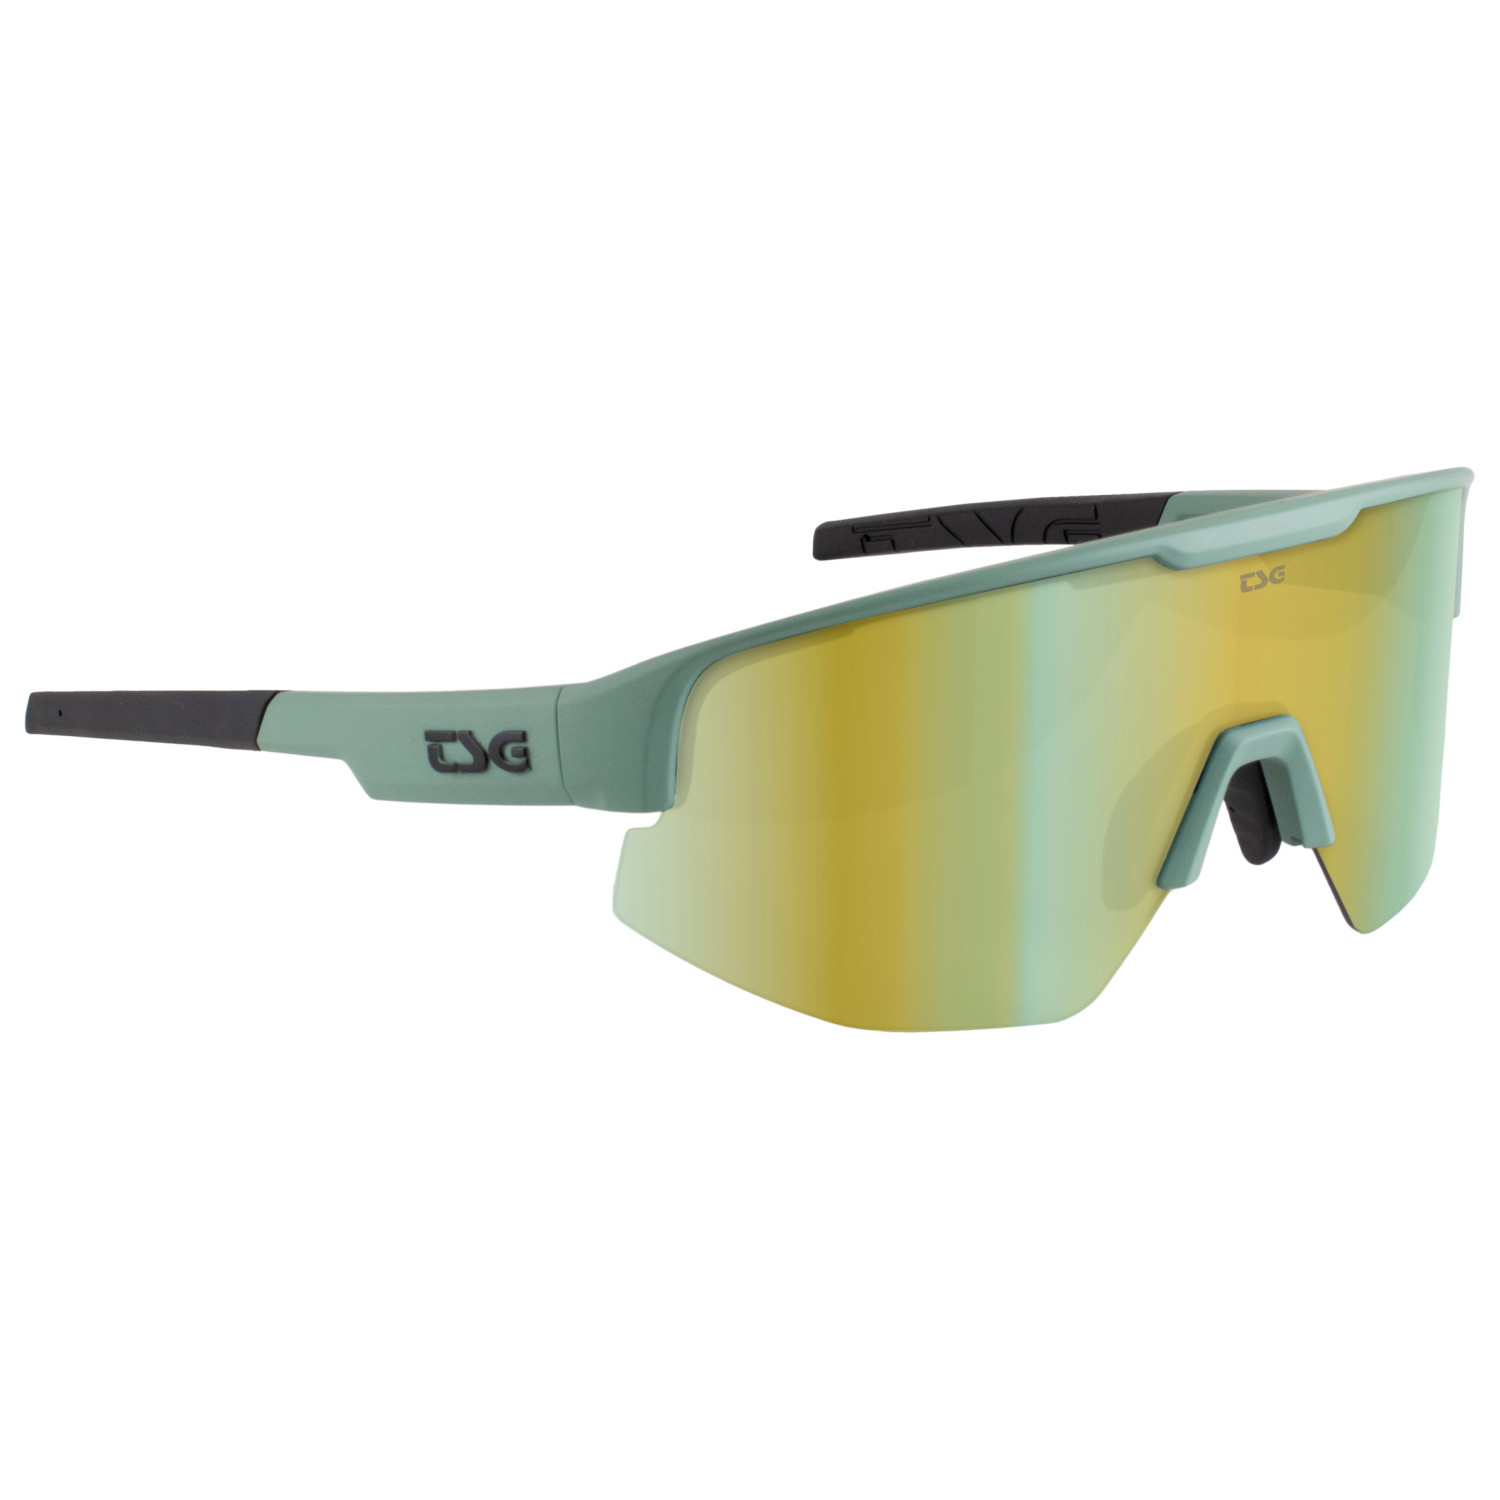 Велосипедные очки Tsg Loam Sunglasses, цвет Green/Grey винтажные мотоциклетные очки ветрозащитные многоцветные велосипедные очки в стиле ретро для езды на велосипеде защитные солнцезащитные